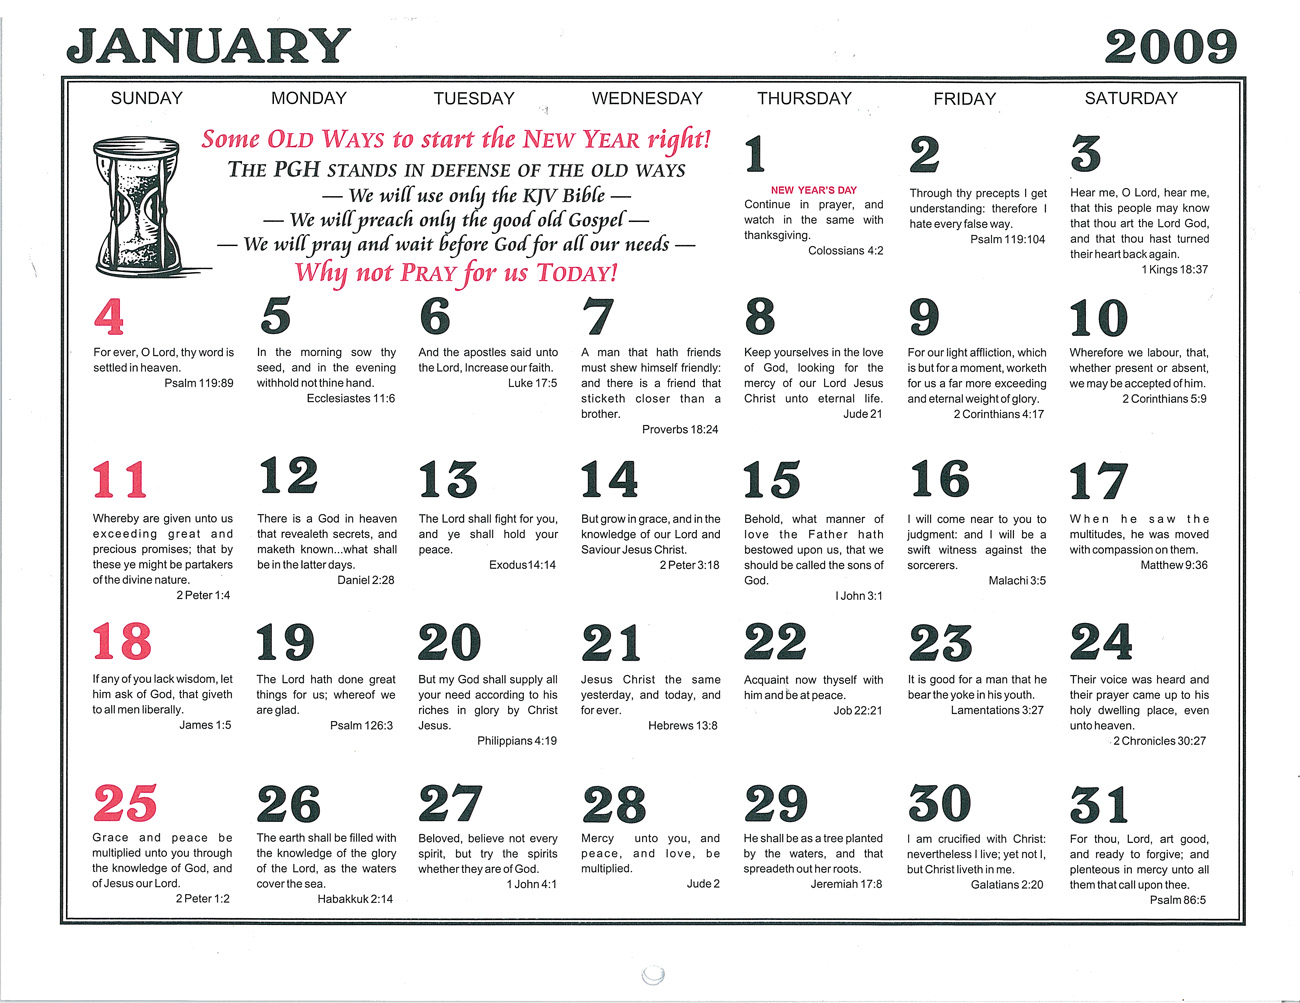 January: 2009 Daily Bible Text Calendar